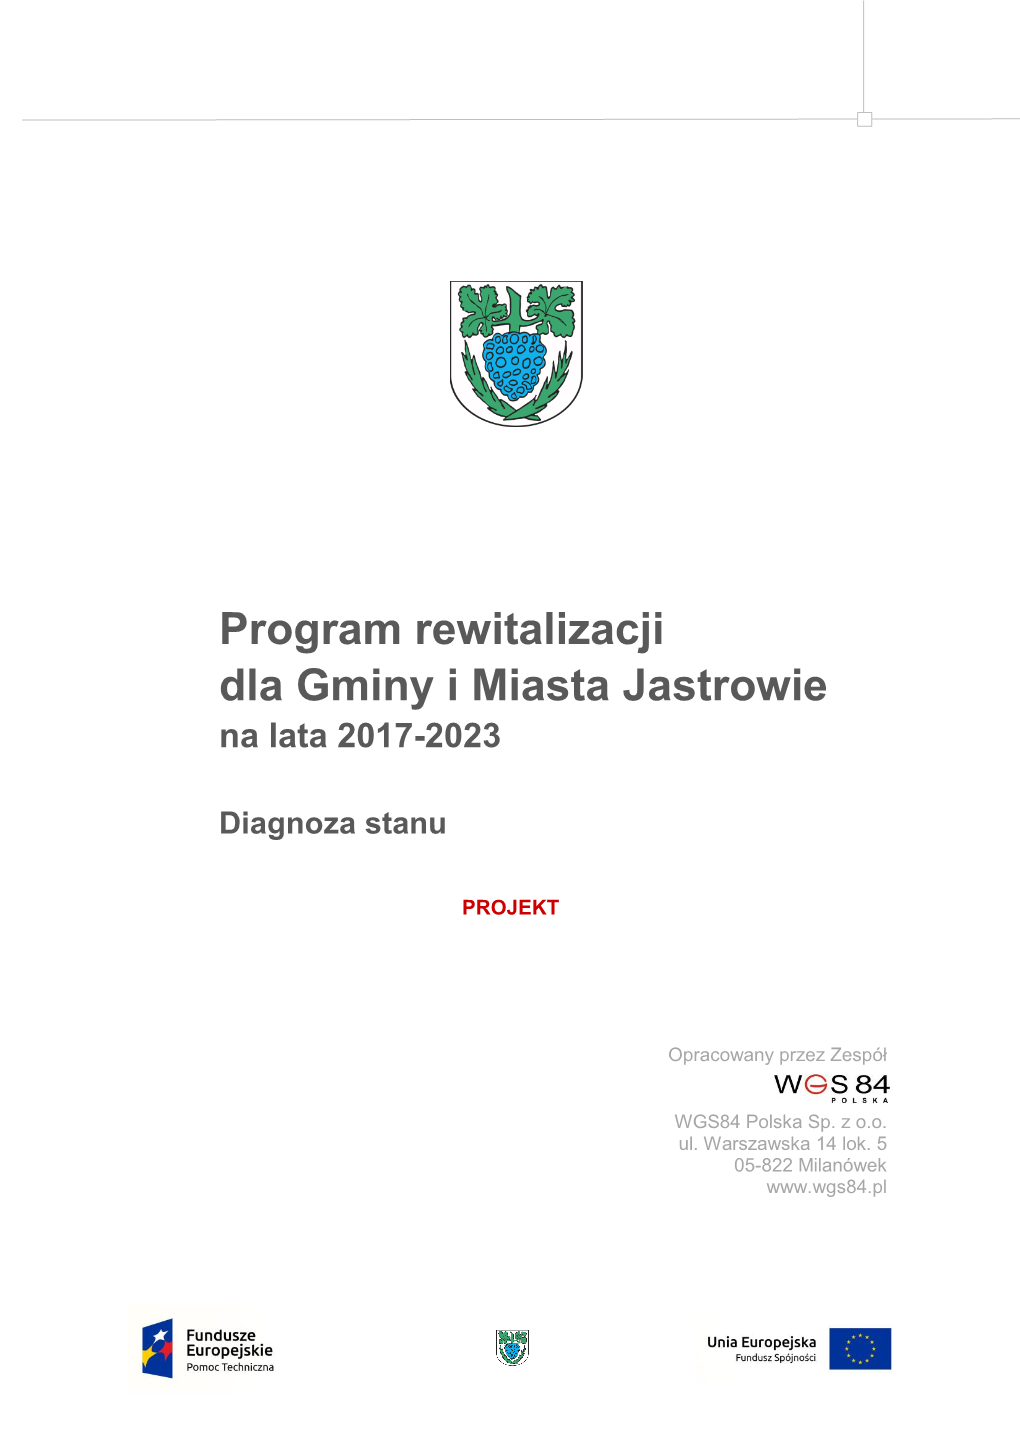 Program Rewitalizacji Dla Gminy I Miasta Jastrowie Na Lata 2017-2023